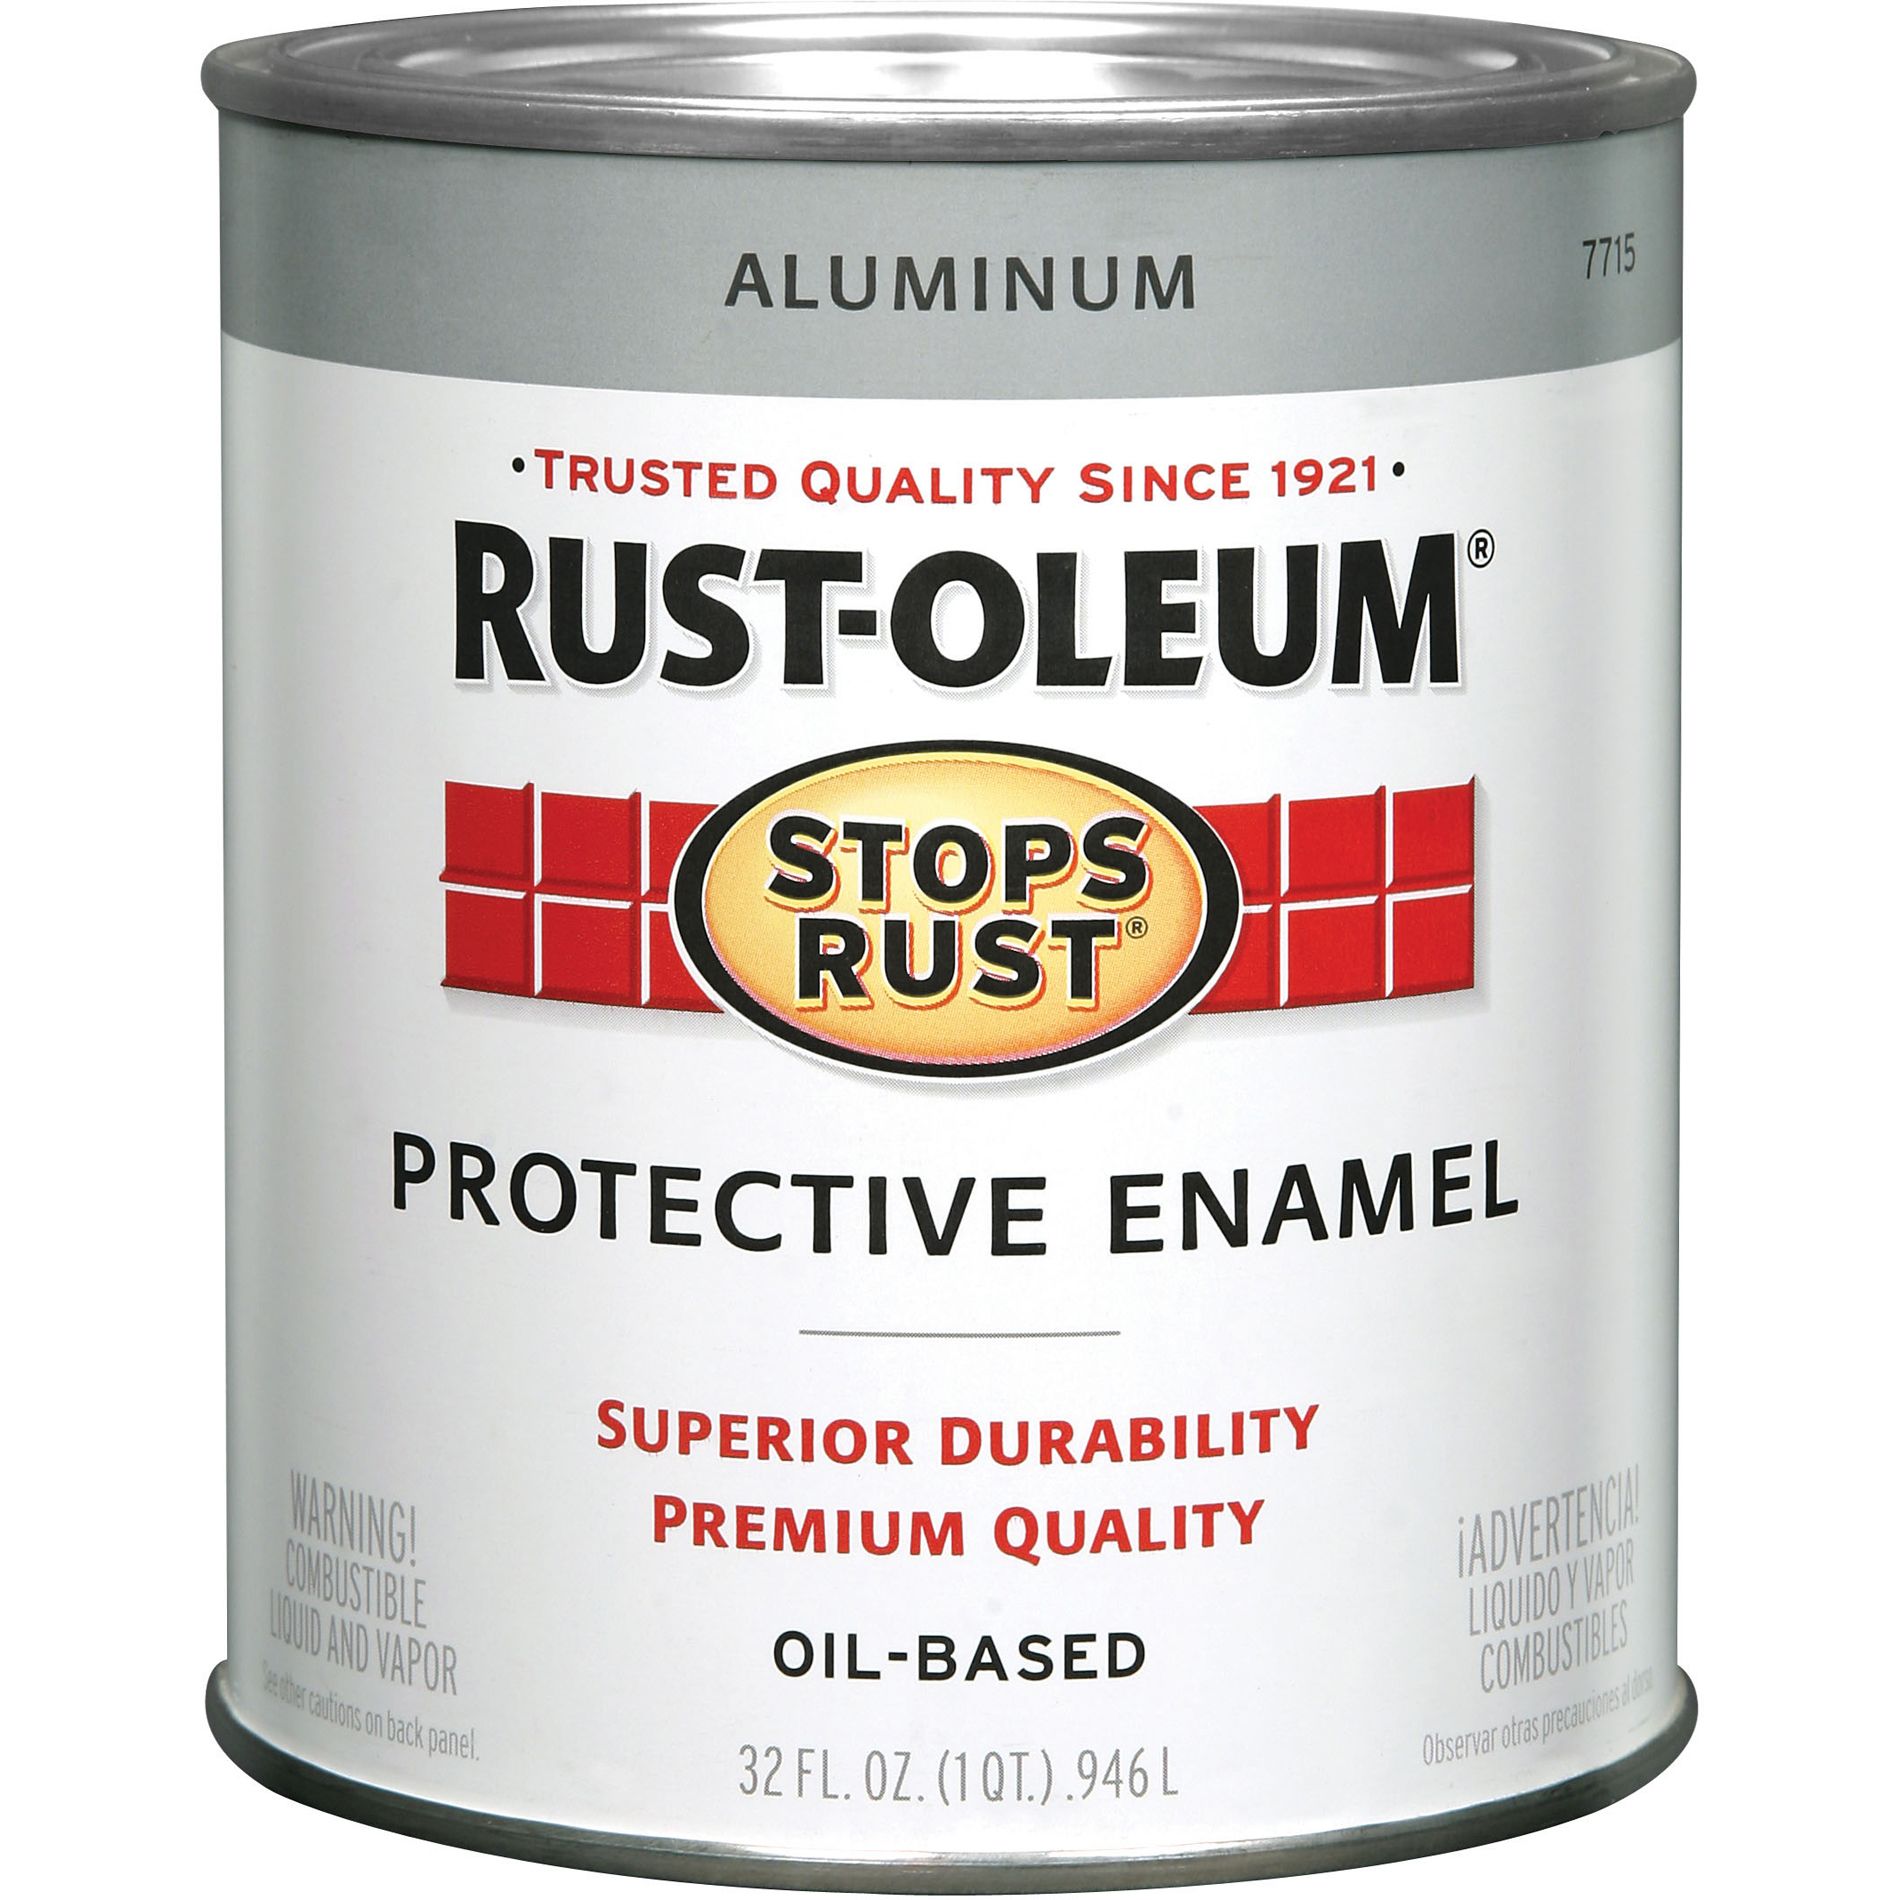 Rust-Oleum Aluminum Enamel - 7715502